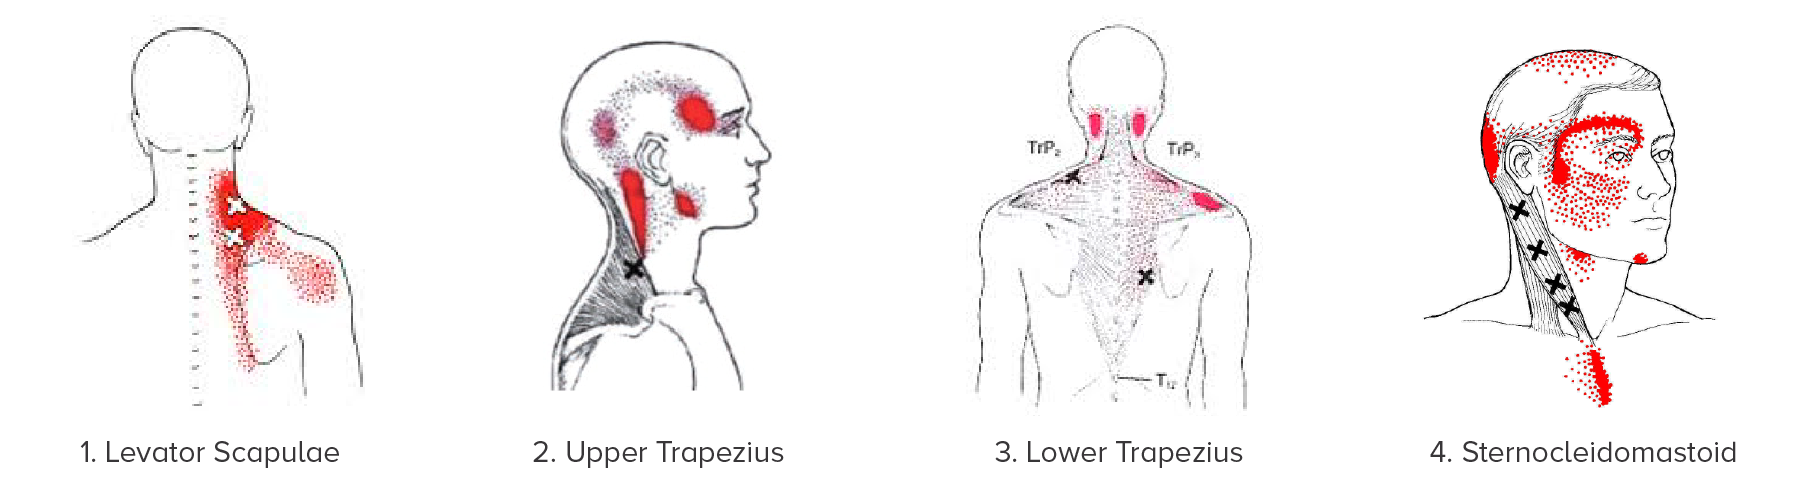 Neck Pain Headaches Migraines Causes Treatment Dr Chris Homan